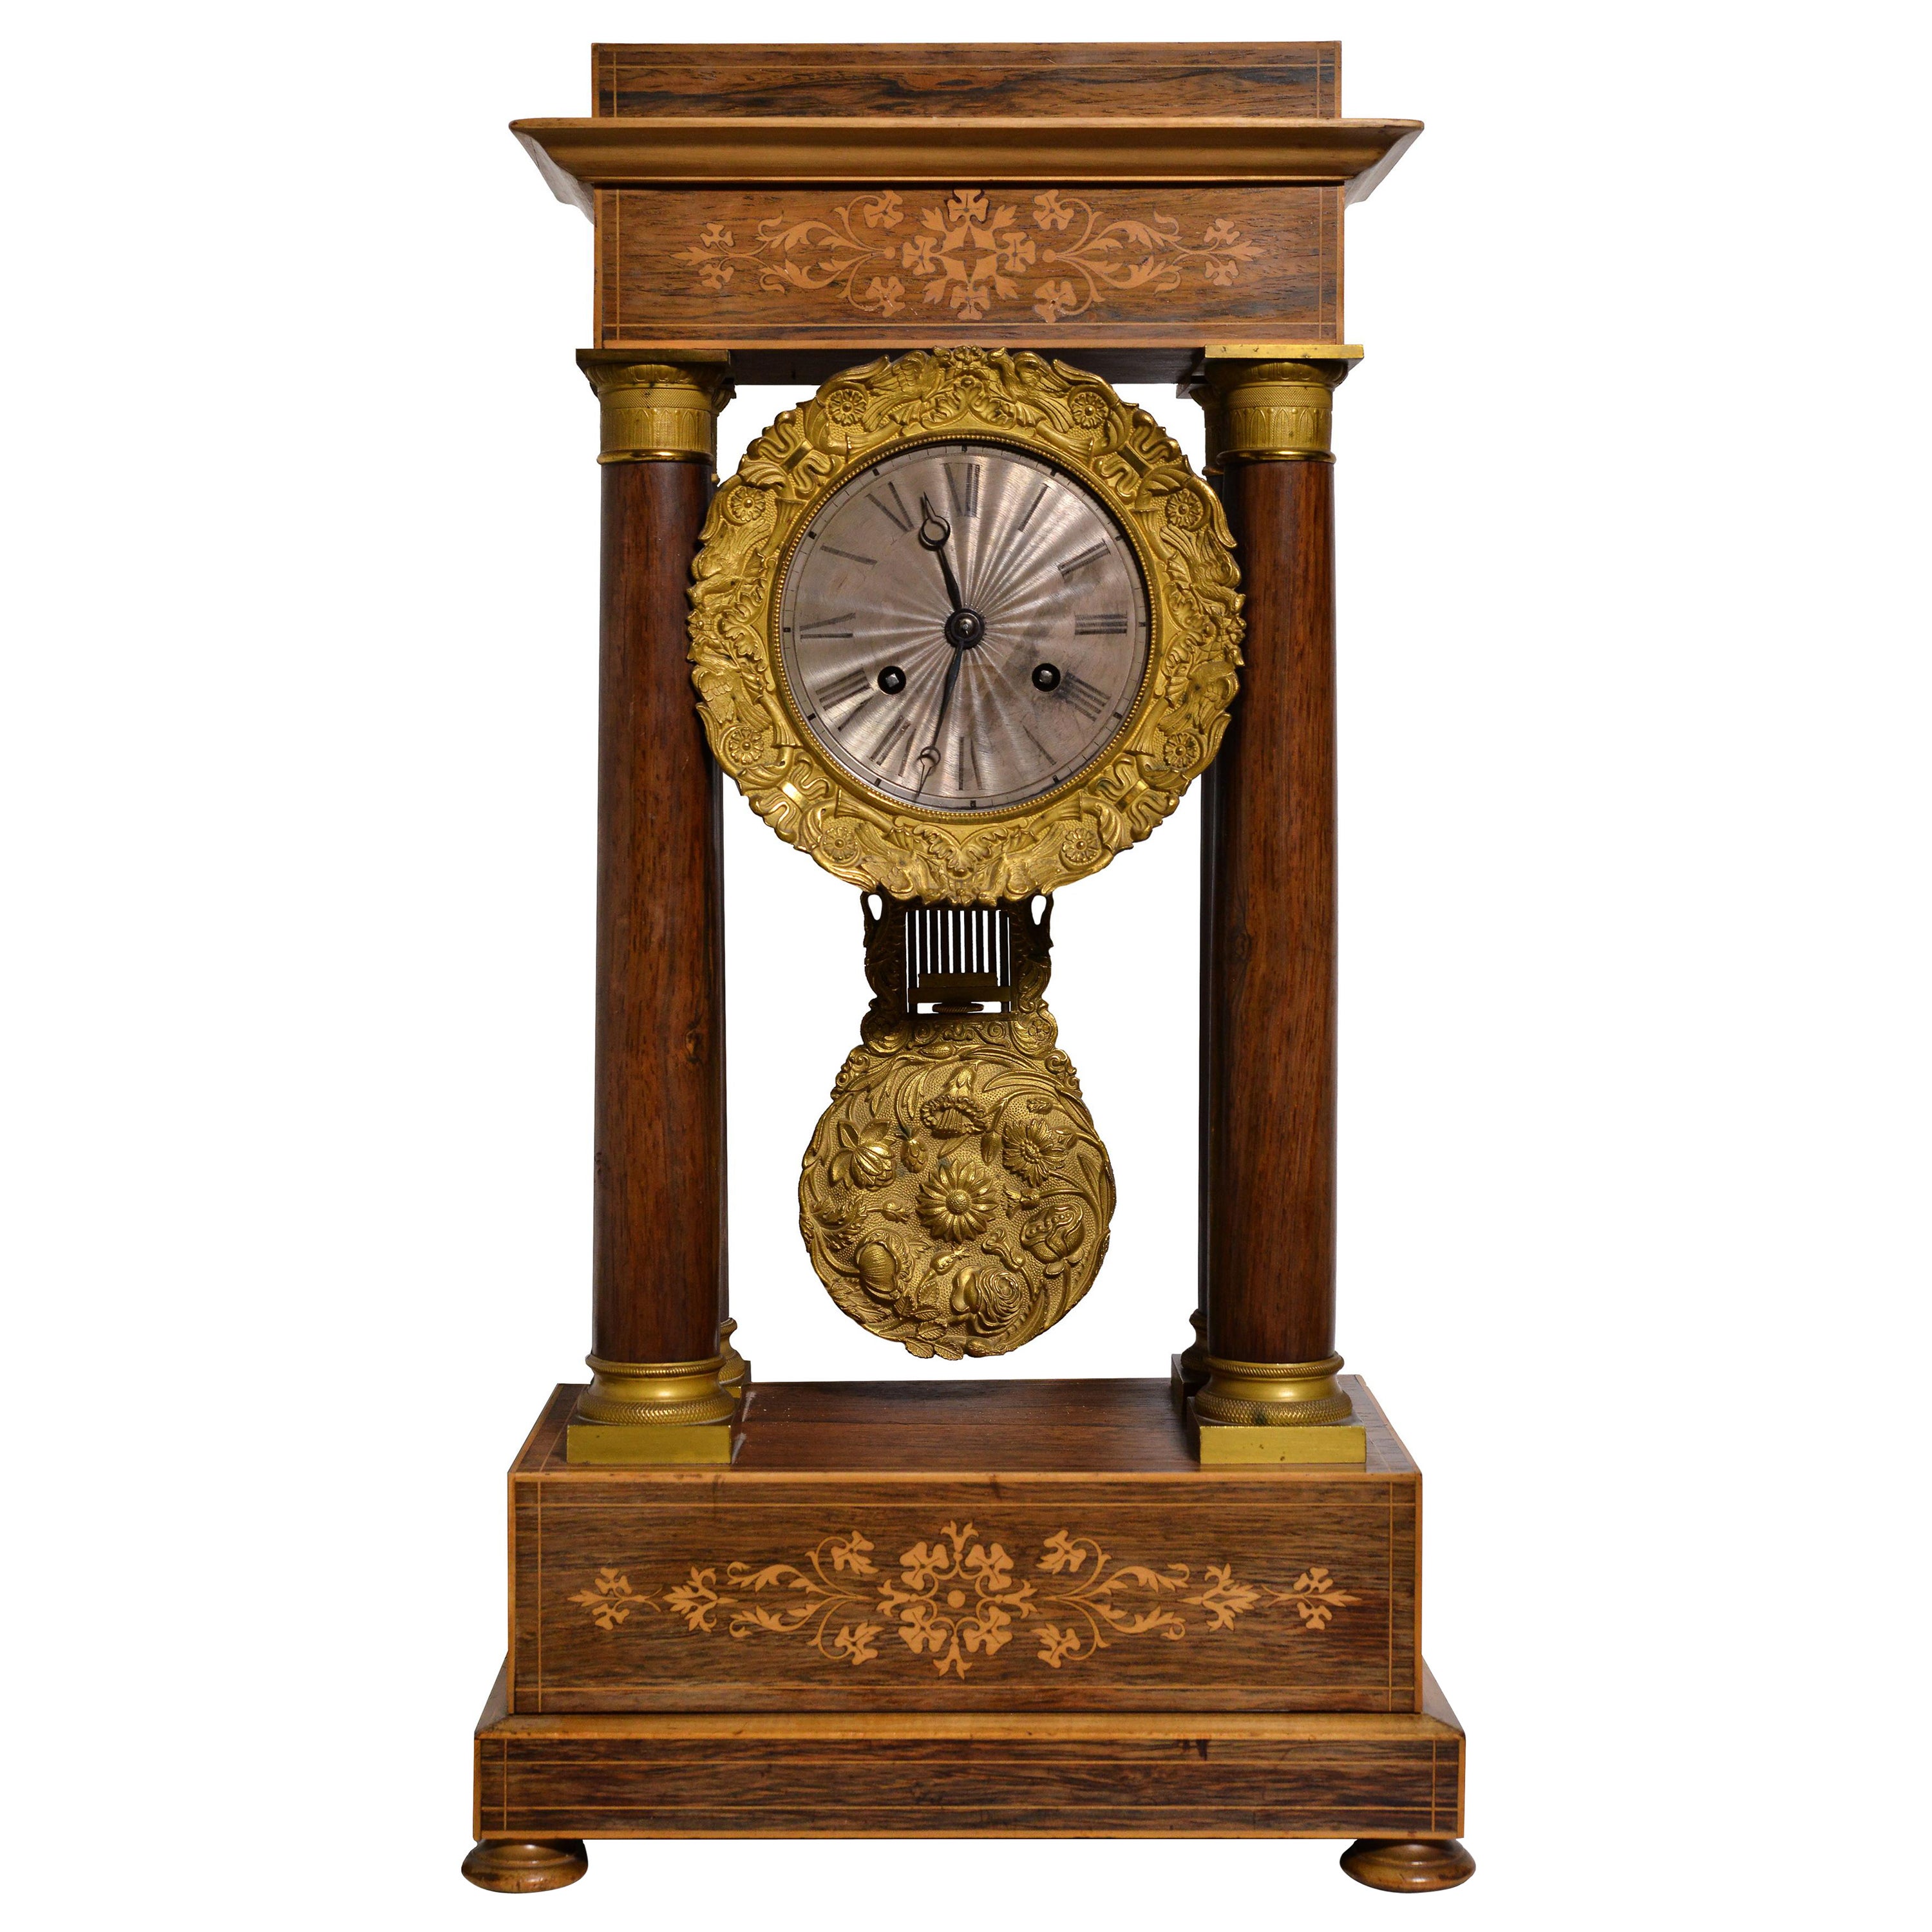 Französische Portico-Uhr aus Rosenholz mit Intarsien, vergoldet und versilbert, frühes 19. Jahrhundert